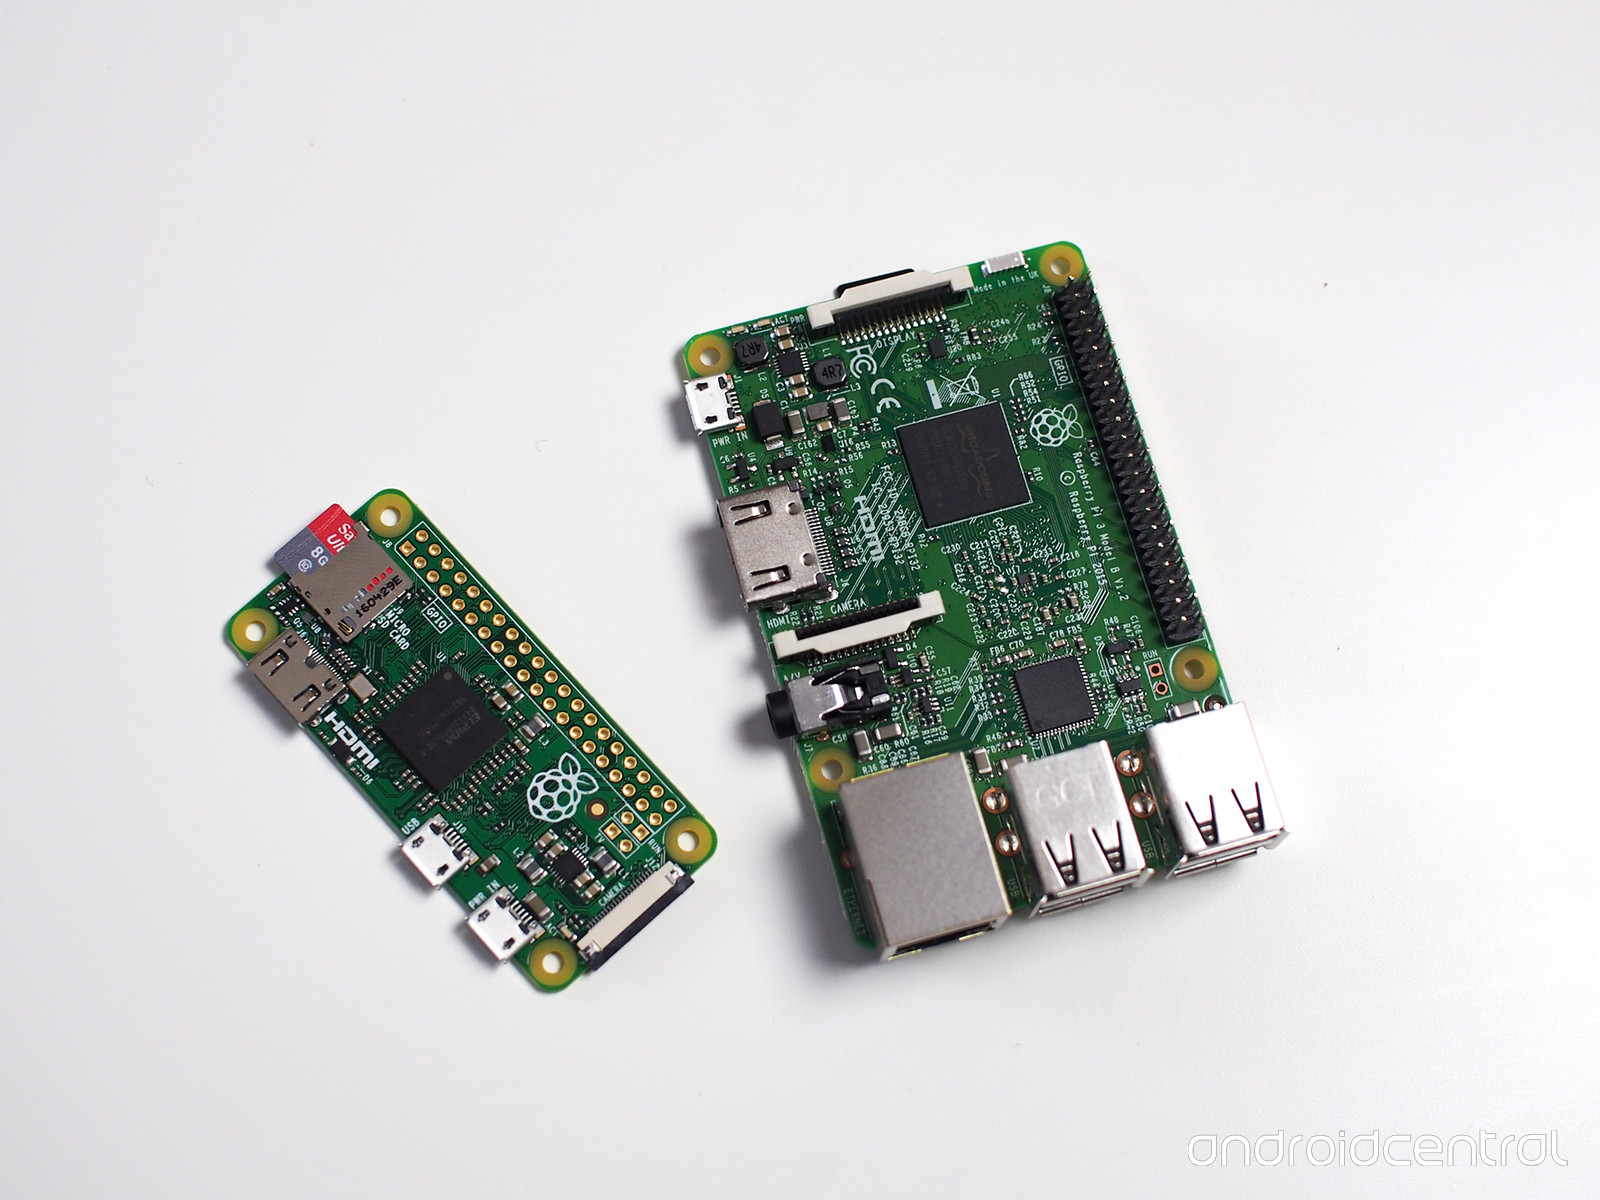 Overview of Raspberry Pi zero